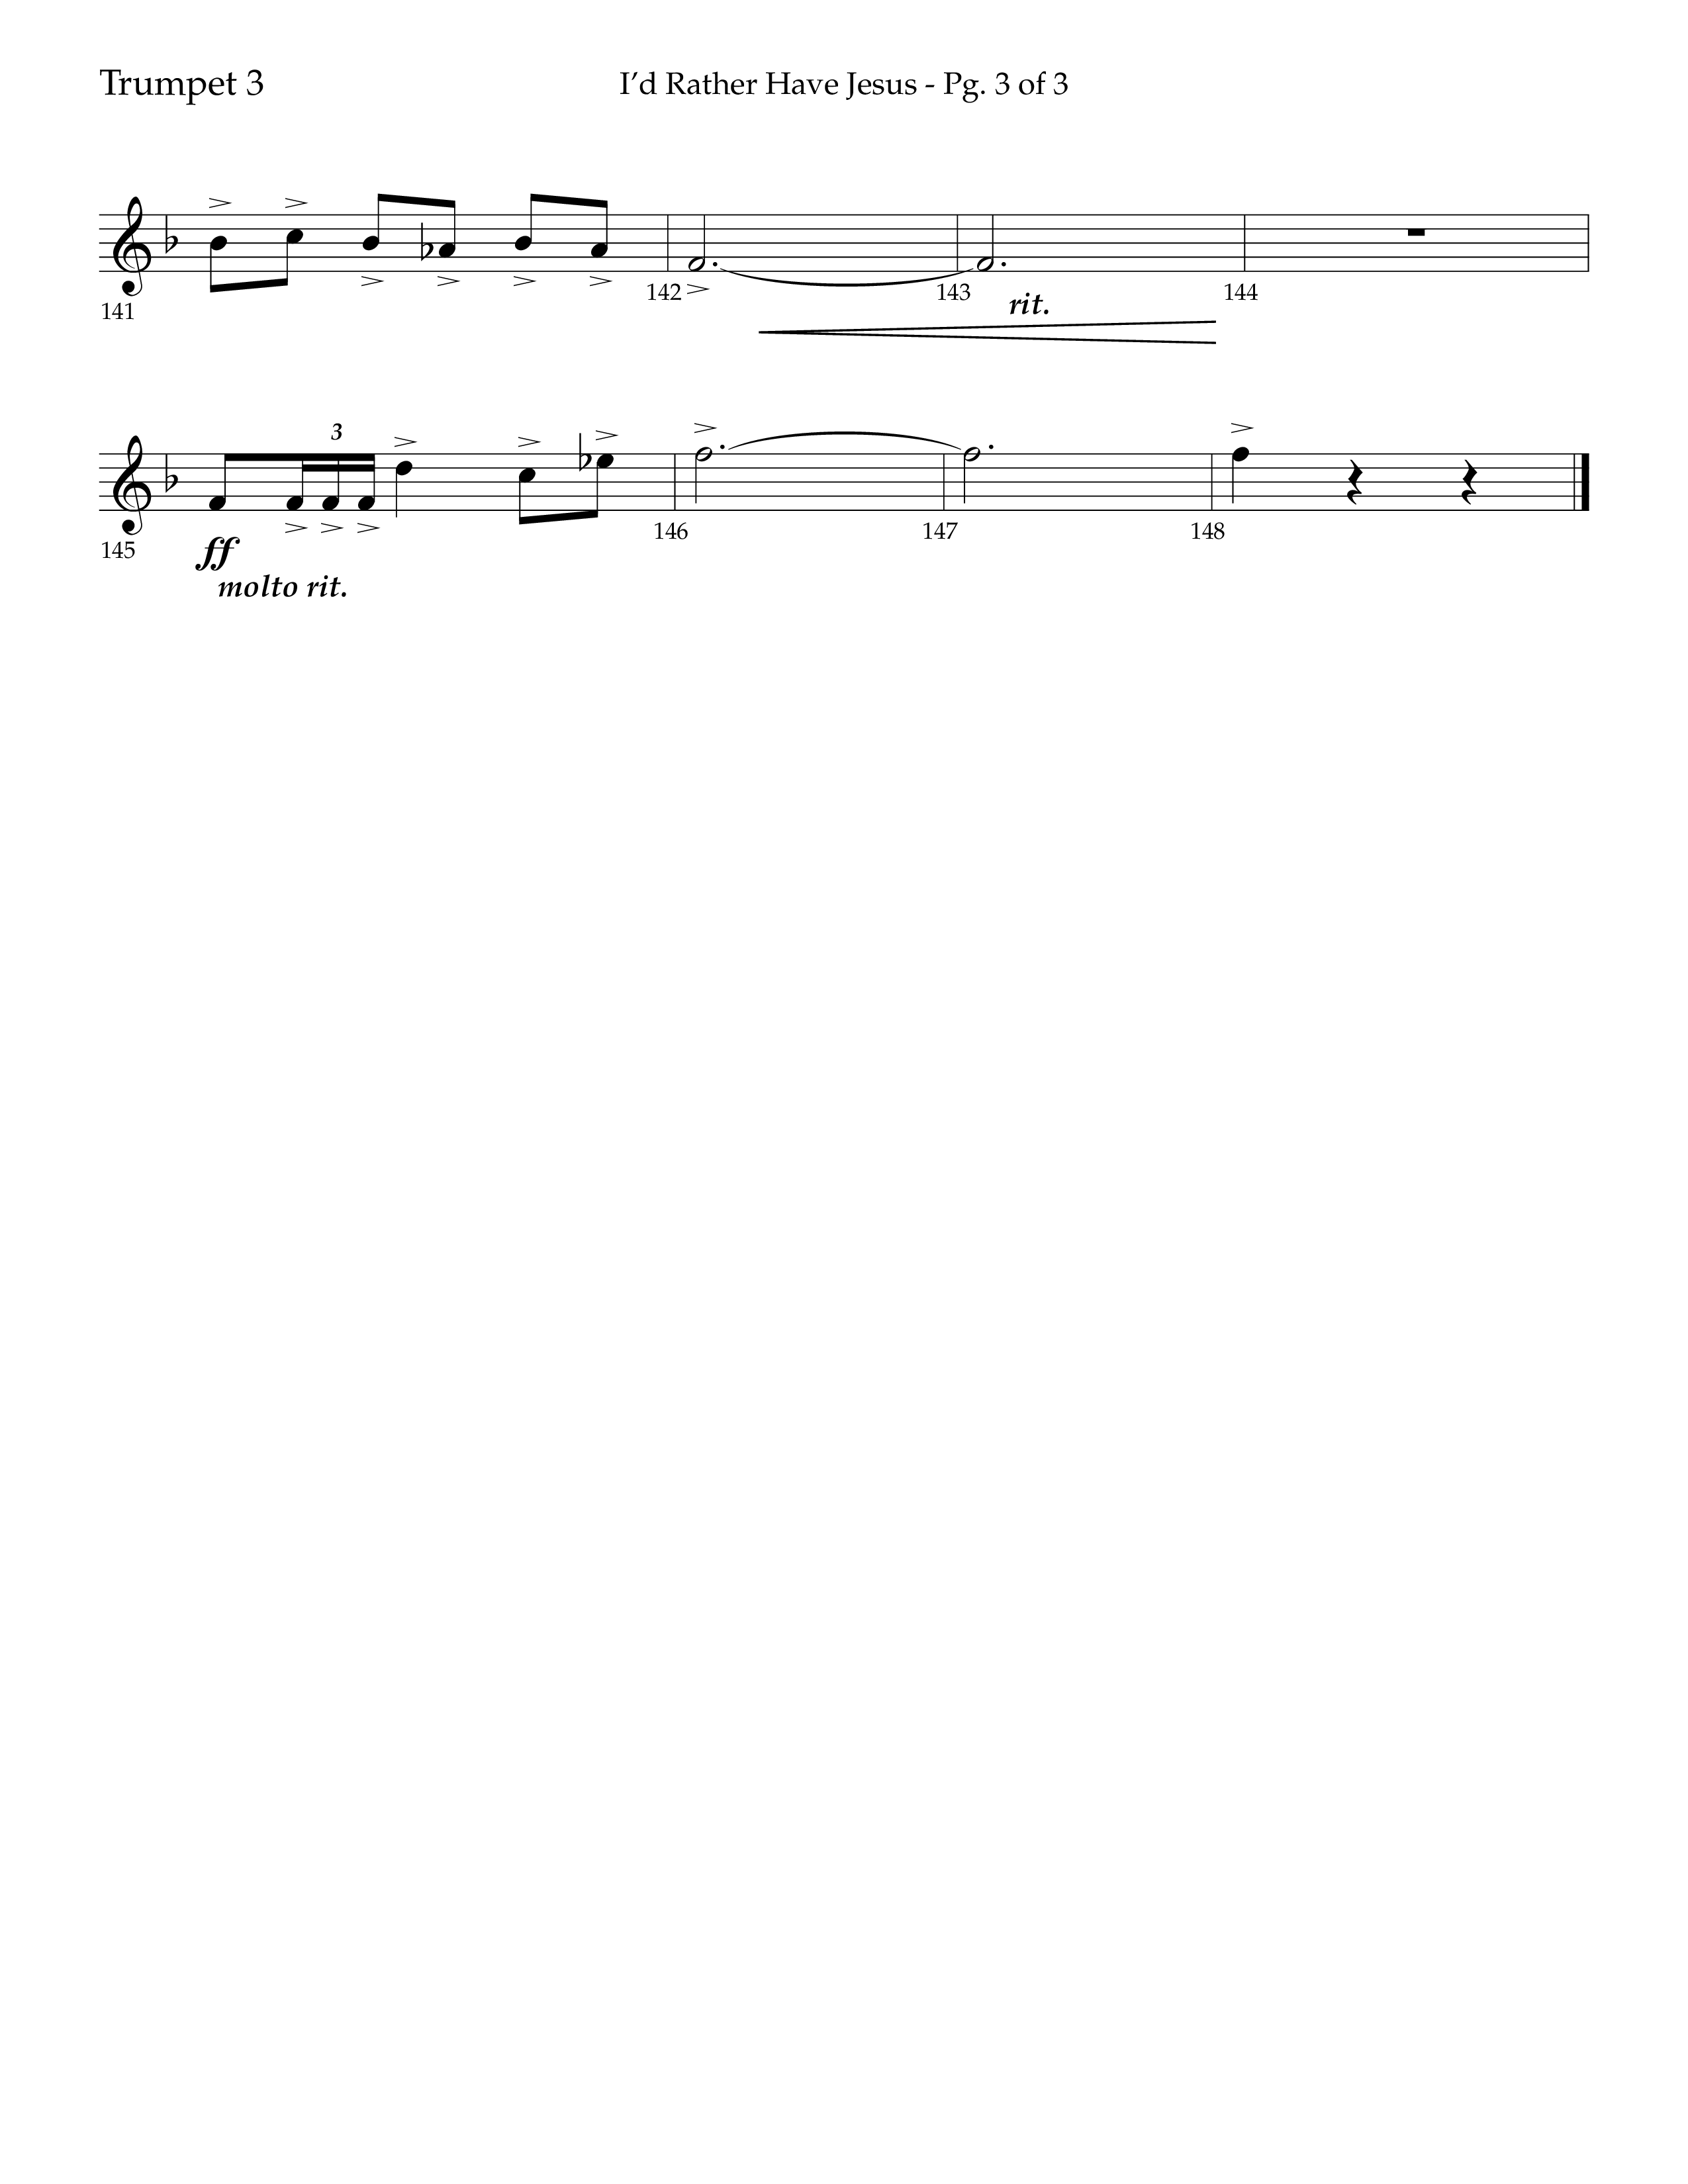 I'd Rather Have Jesus (Choral Anthem SATB) Trumpet 3 (Lifeway Choral / Arr. Richard Kingsmore)